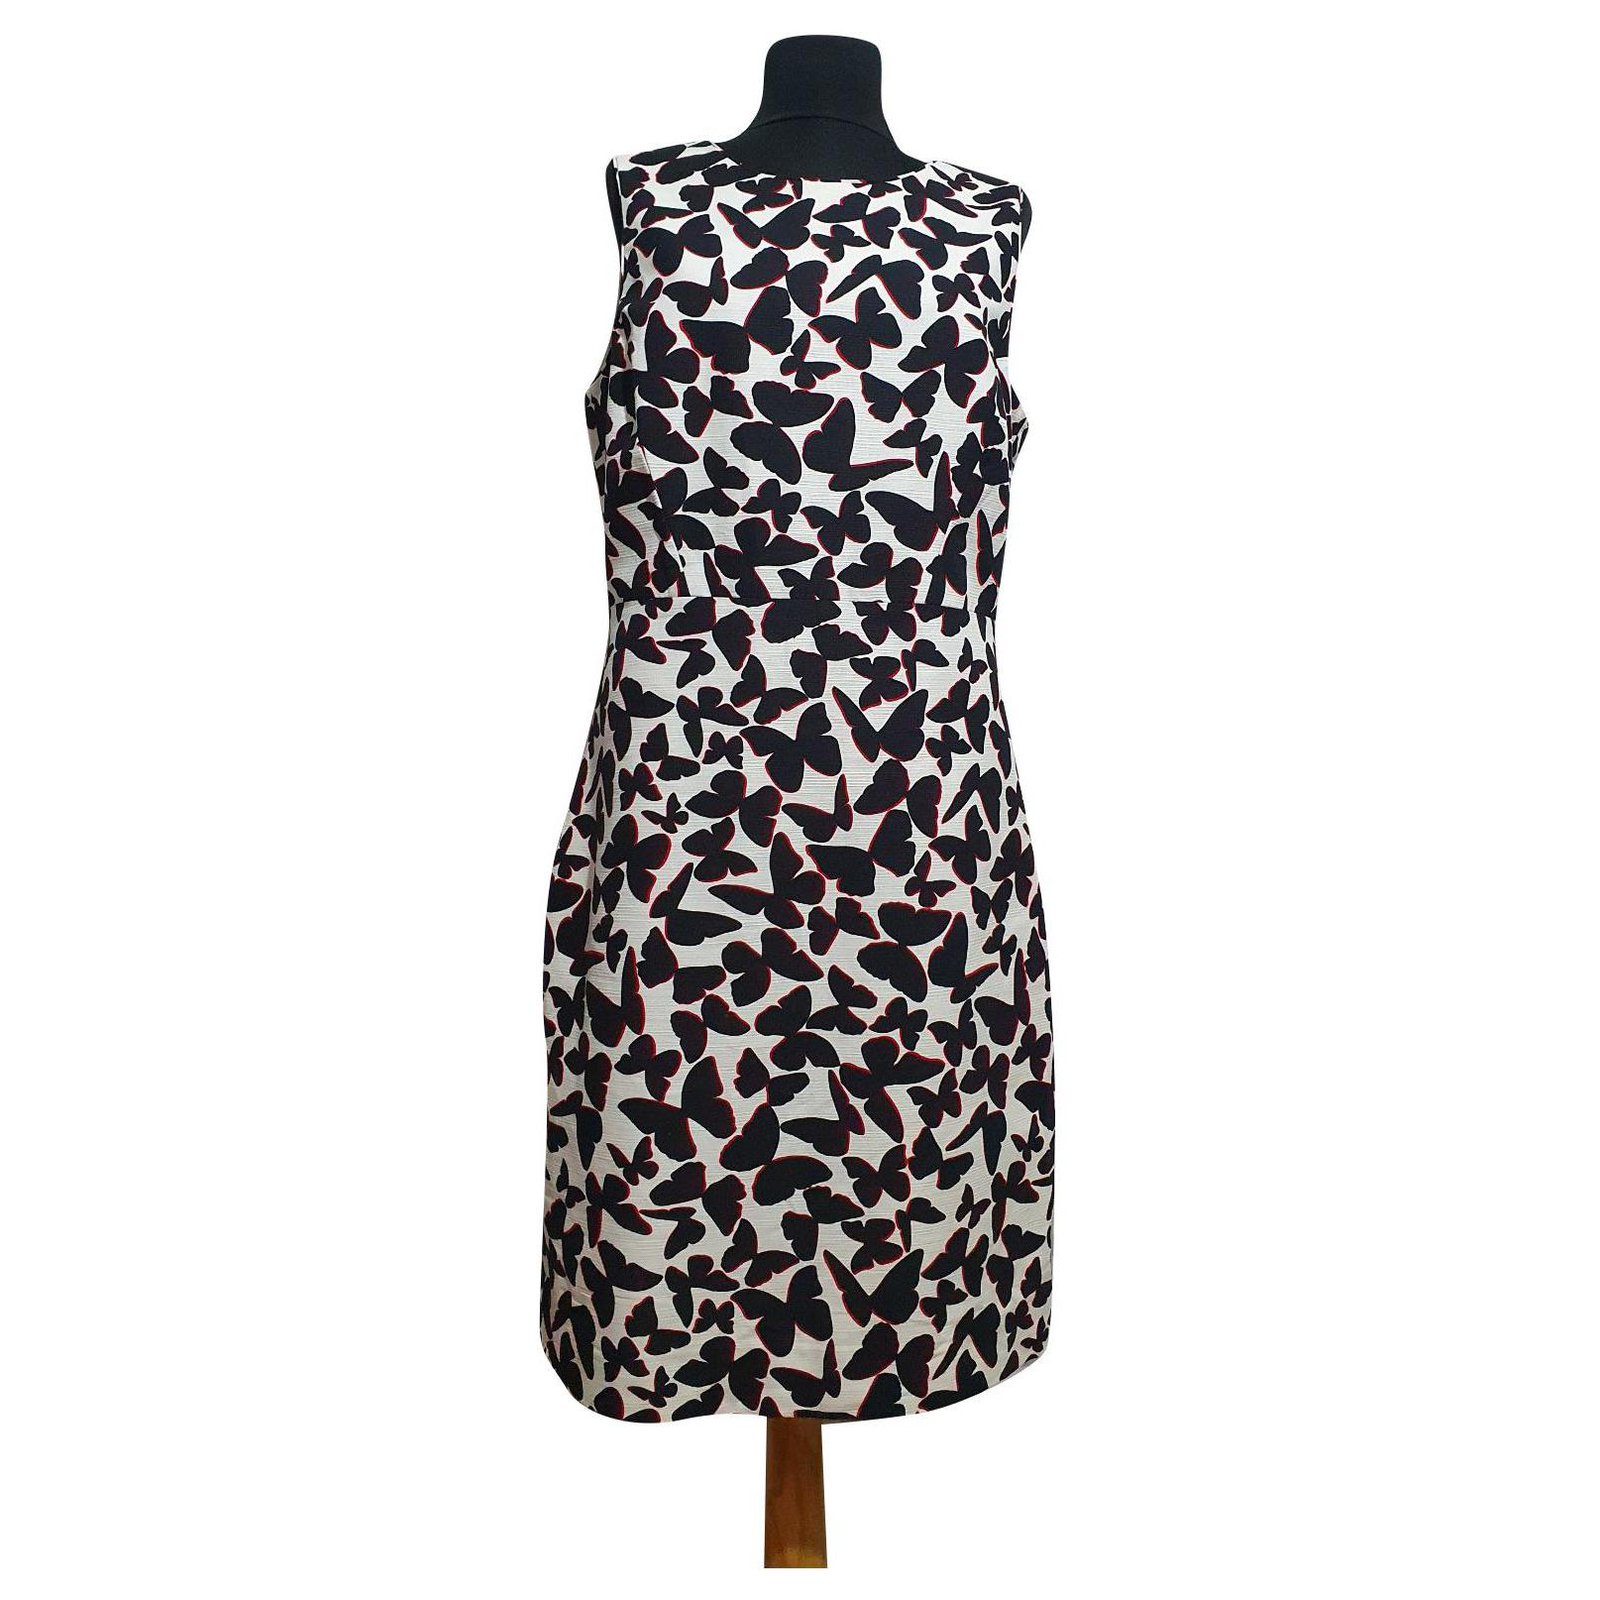 Kate Spade Floral-Print Cotton Dress